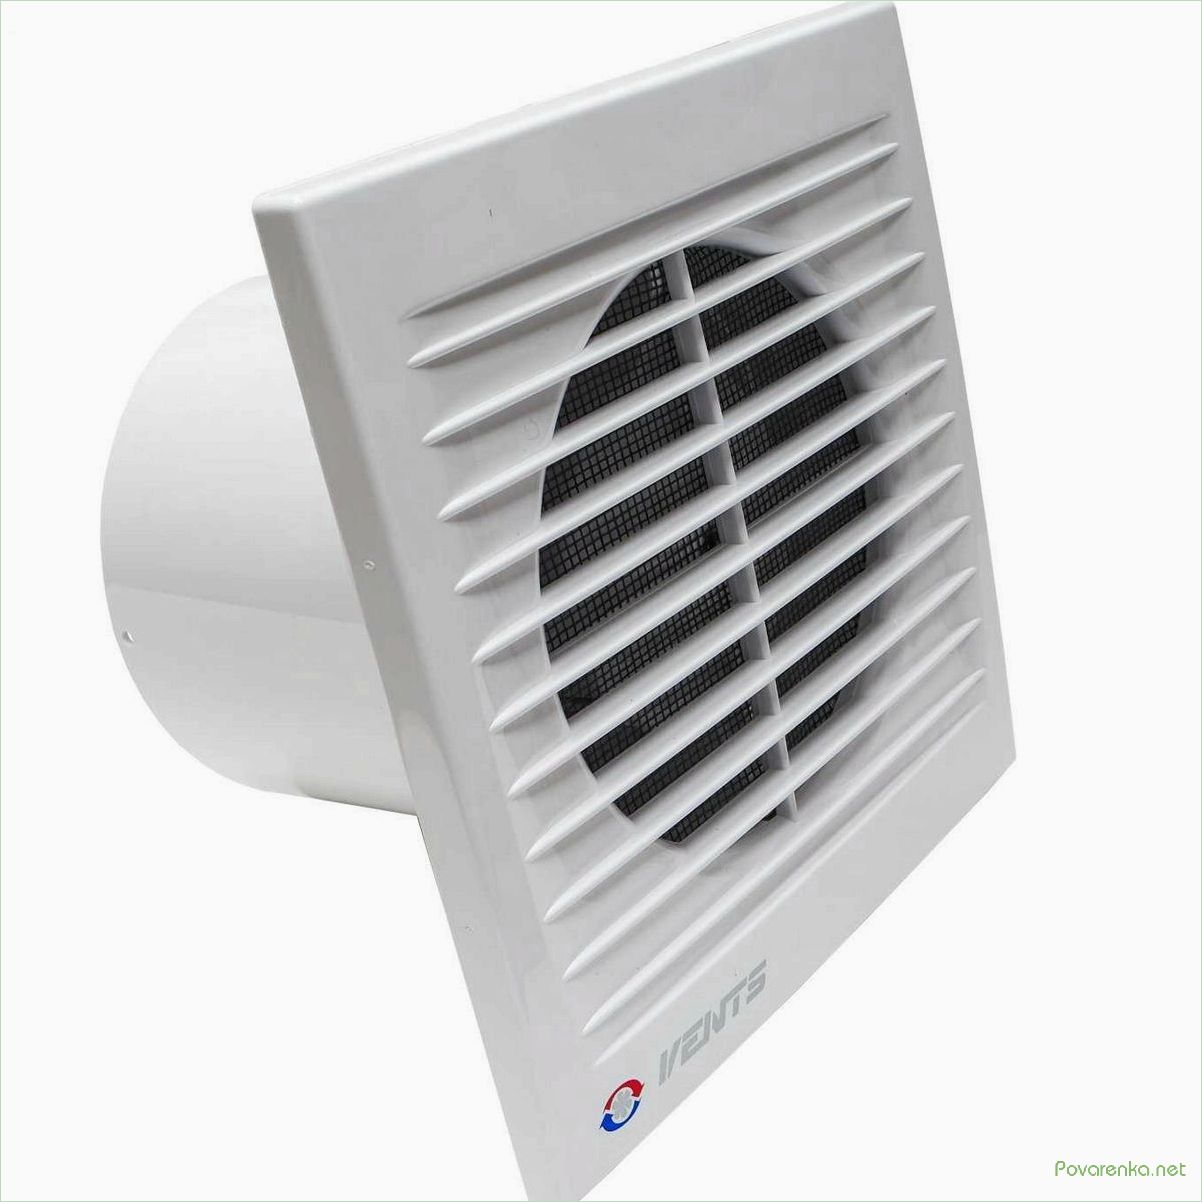 Вентилятор для санузла: эффективное решение для устранения запахов и влажности